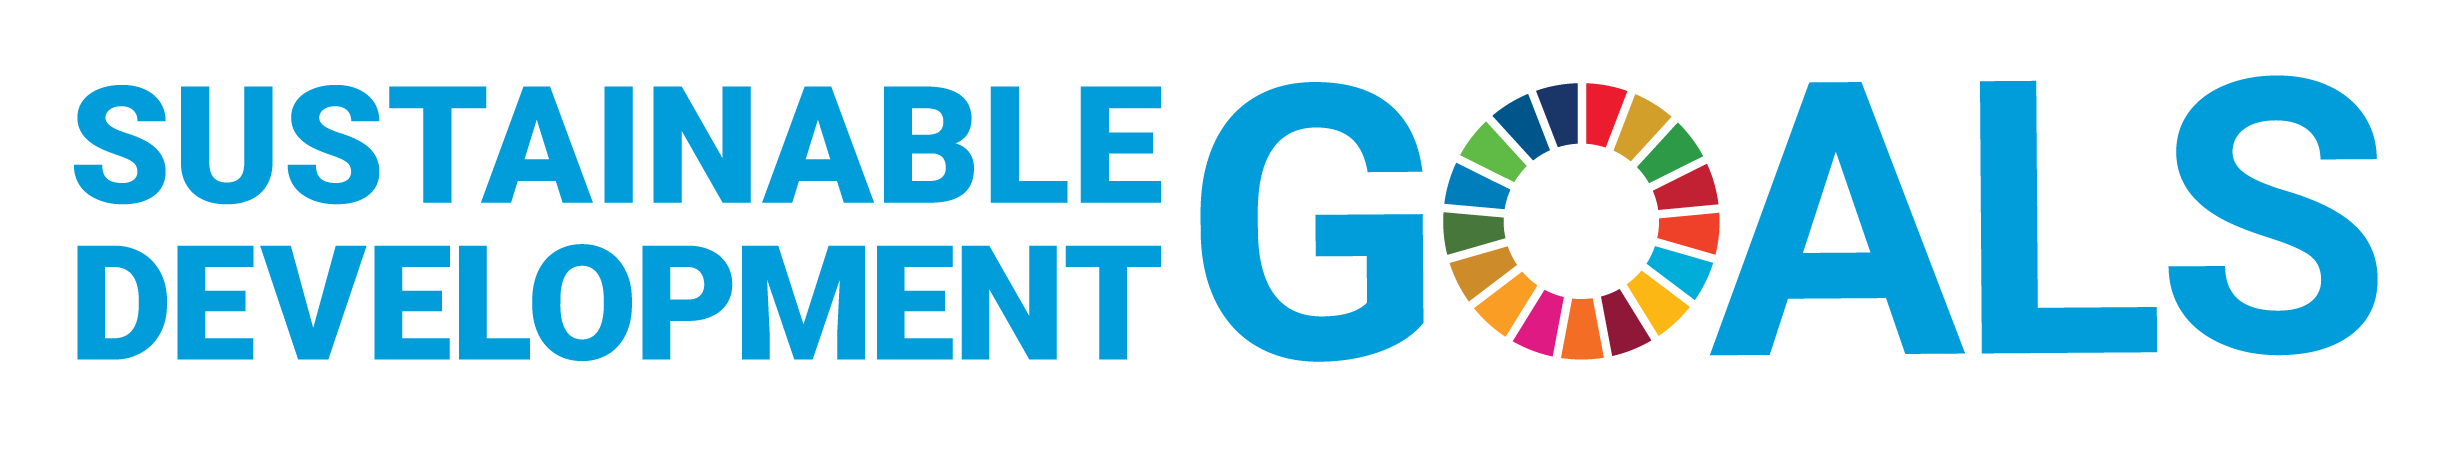 E_SDG_logo_without_UN_emblem_horizontal_Transparent_WEB.png